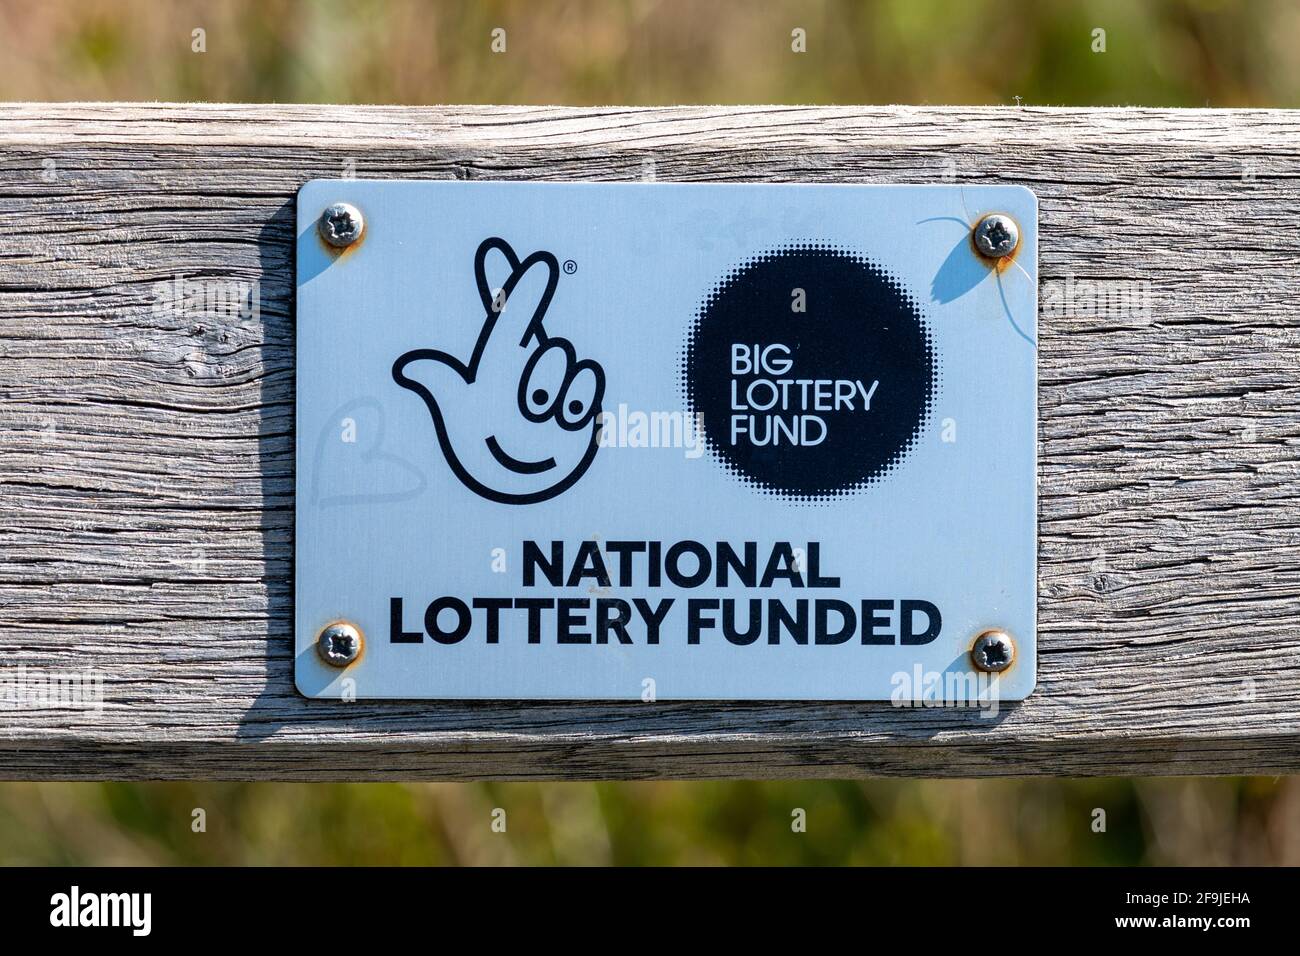 Nationale Lotterie finanziert, große Lotterie-Fonds, Plakette auf einer Holzbank in tices Meadow Naturschutzgebiet, Surrey, Großbritannien Stockfoto